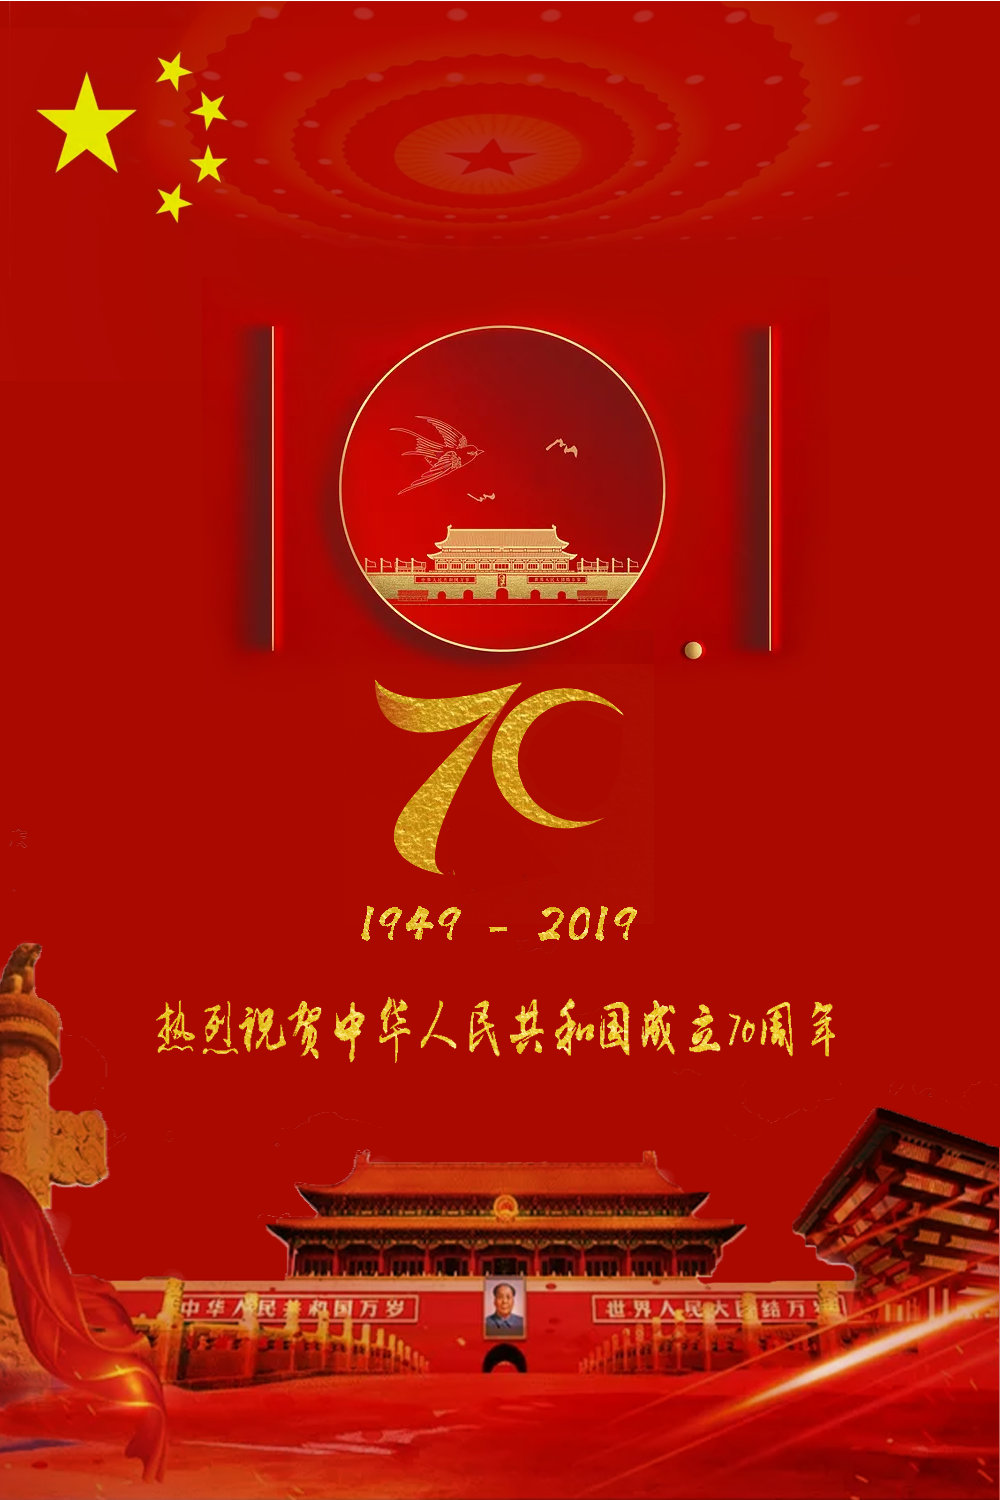 国庆海报文案创意作品 2019国庆七十周年海报文案分享